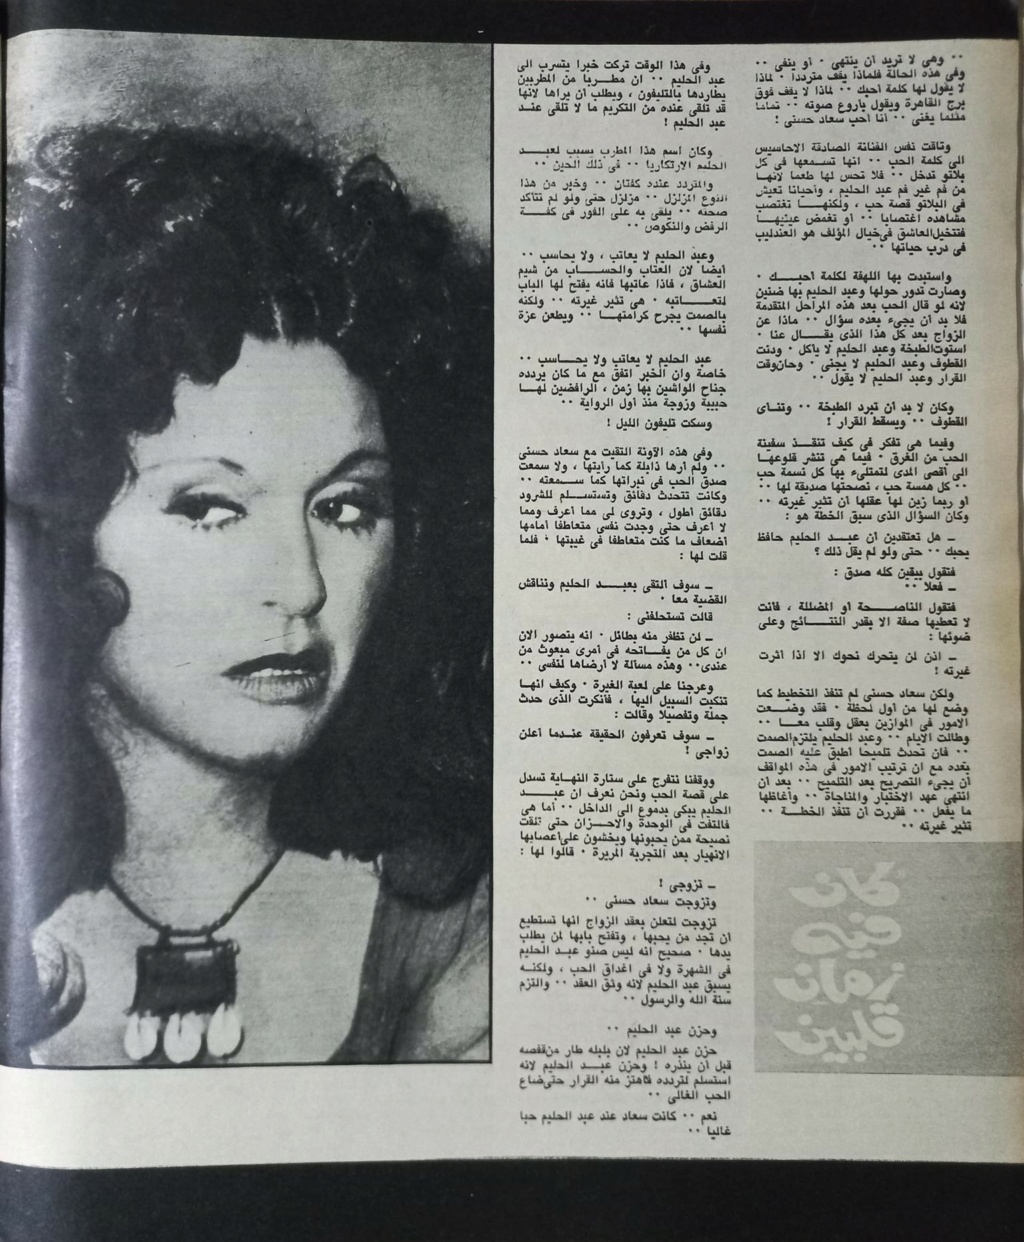 مقال صحفي : كان فيه زمان قلبين 1977 م 343